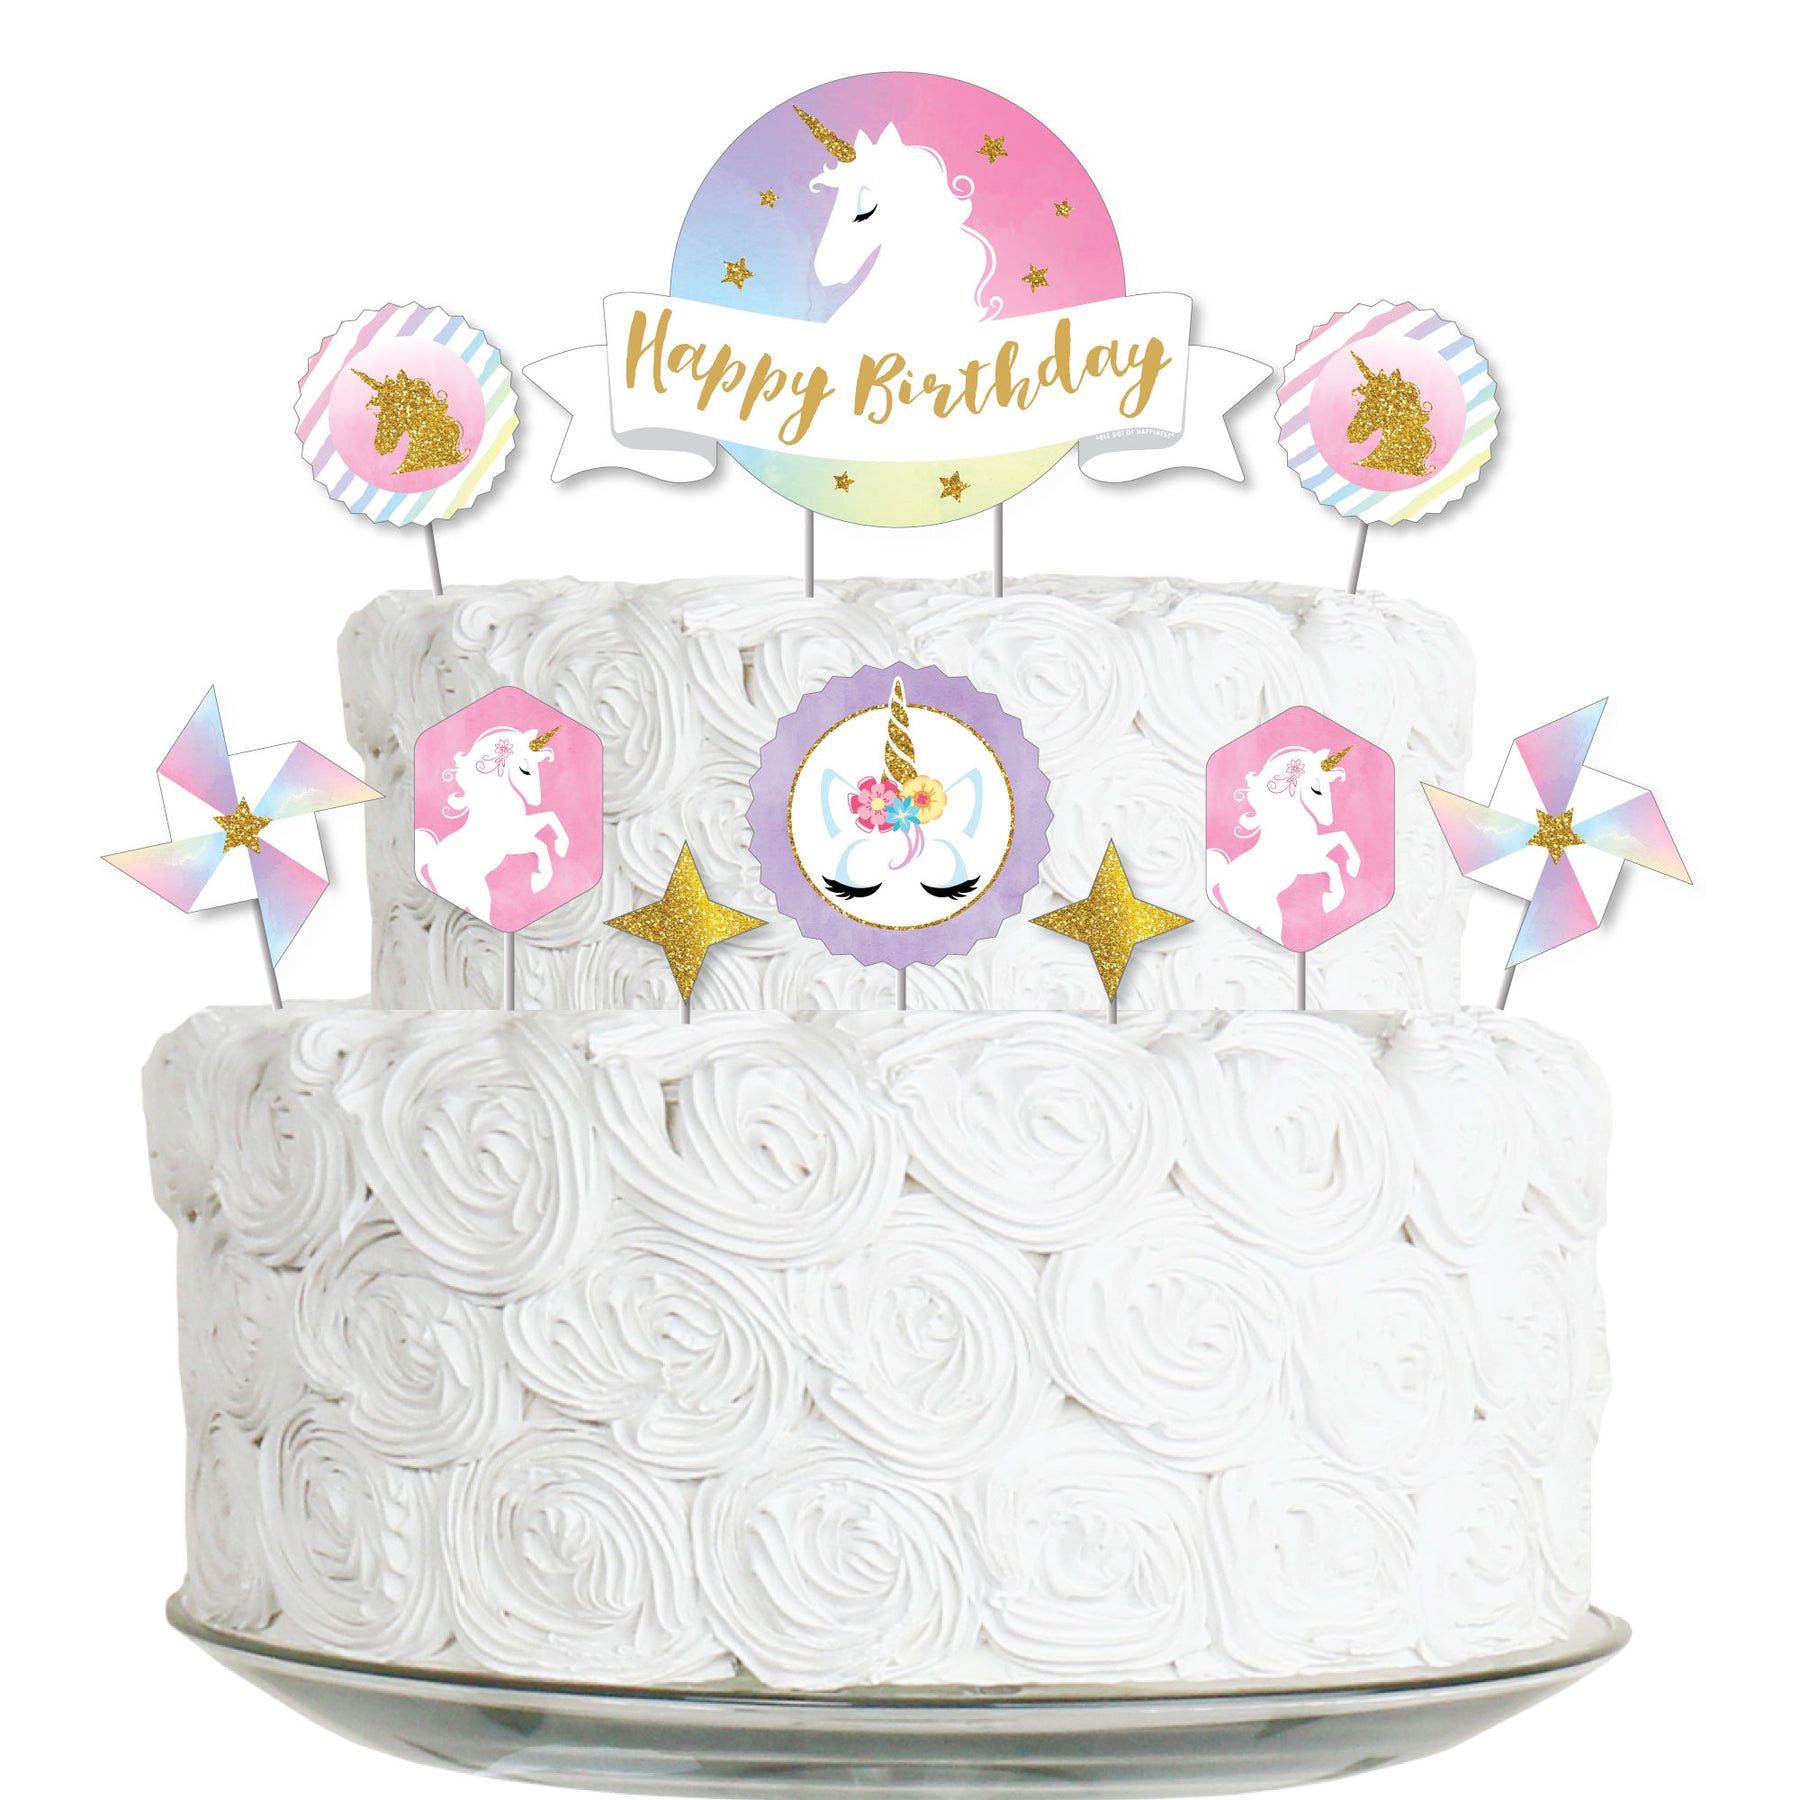 Rainbow Unicorn - Magical Unicorn Birthday Party Cake Decorating ...